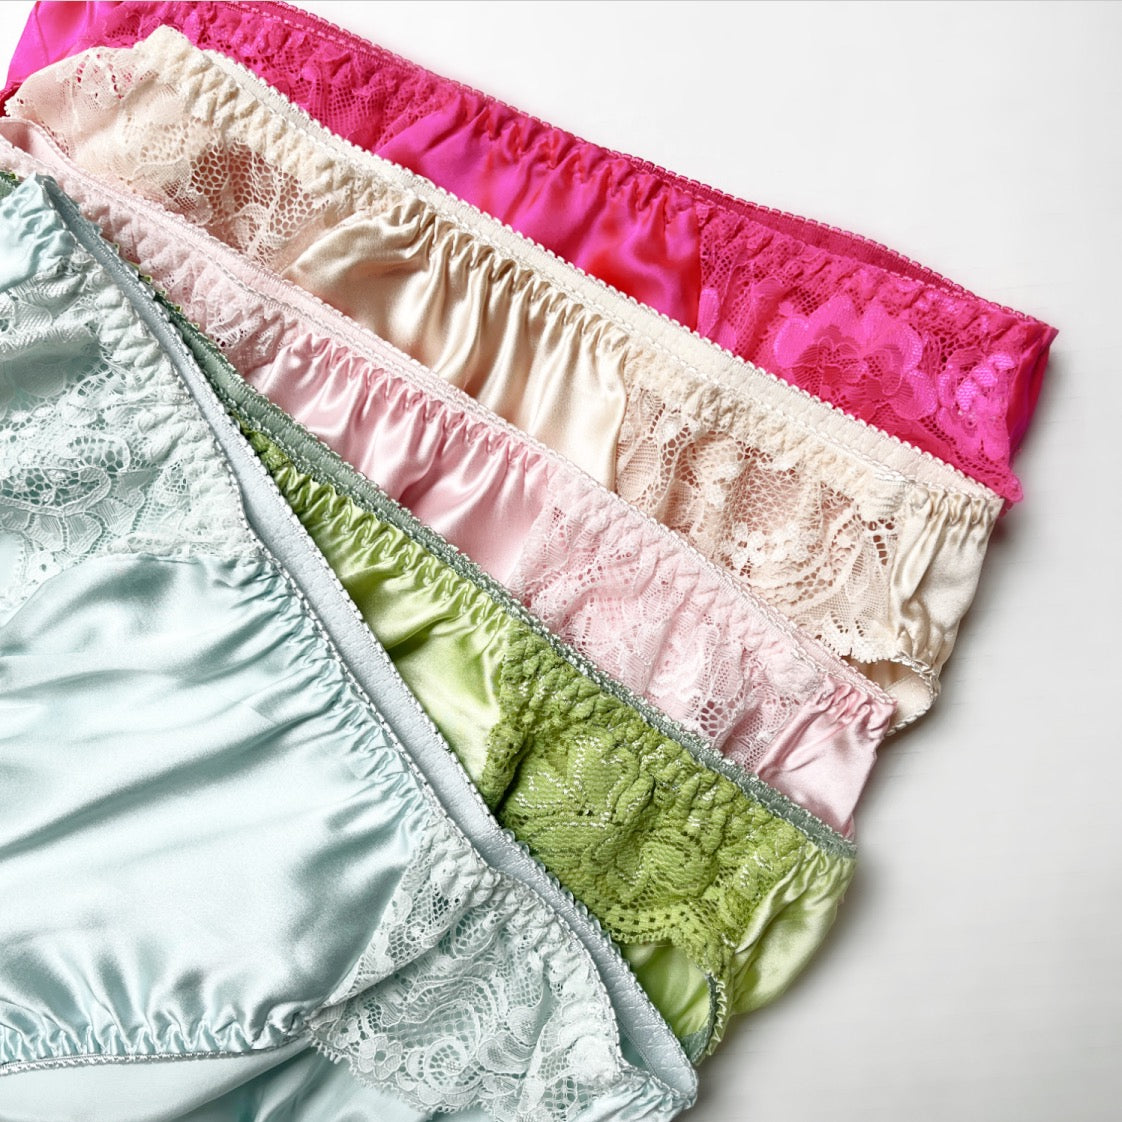 Silk lace underwear brief for women